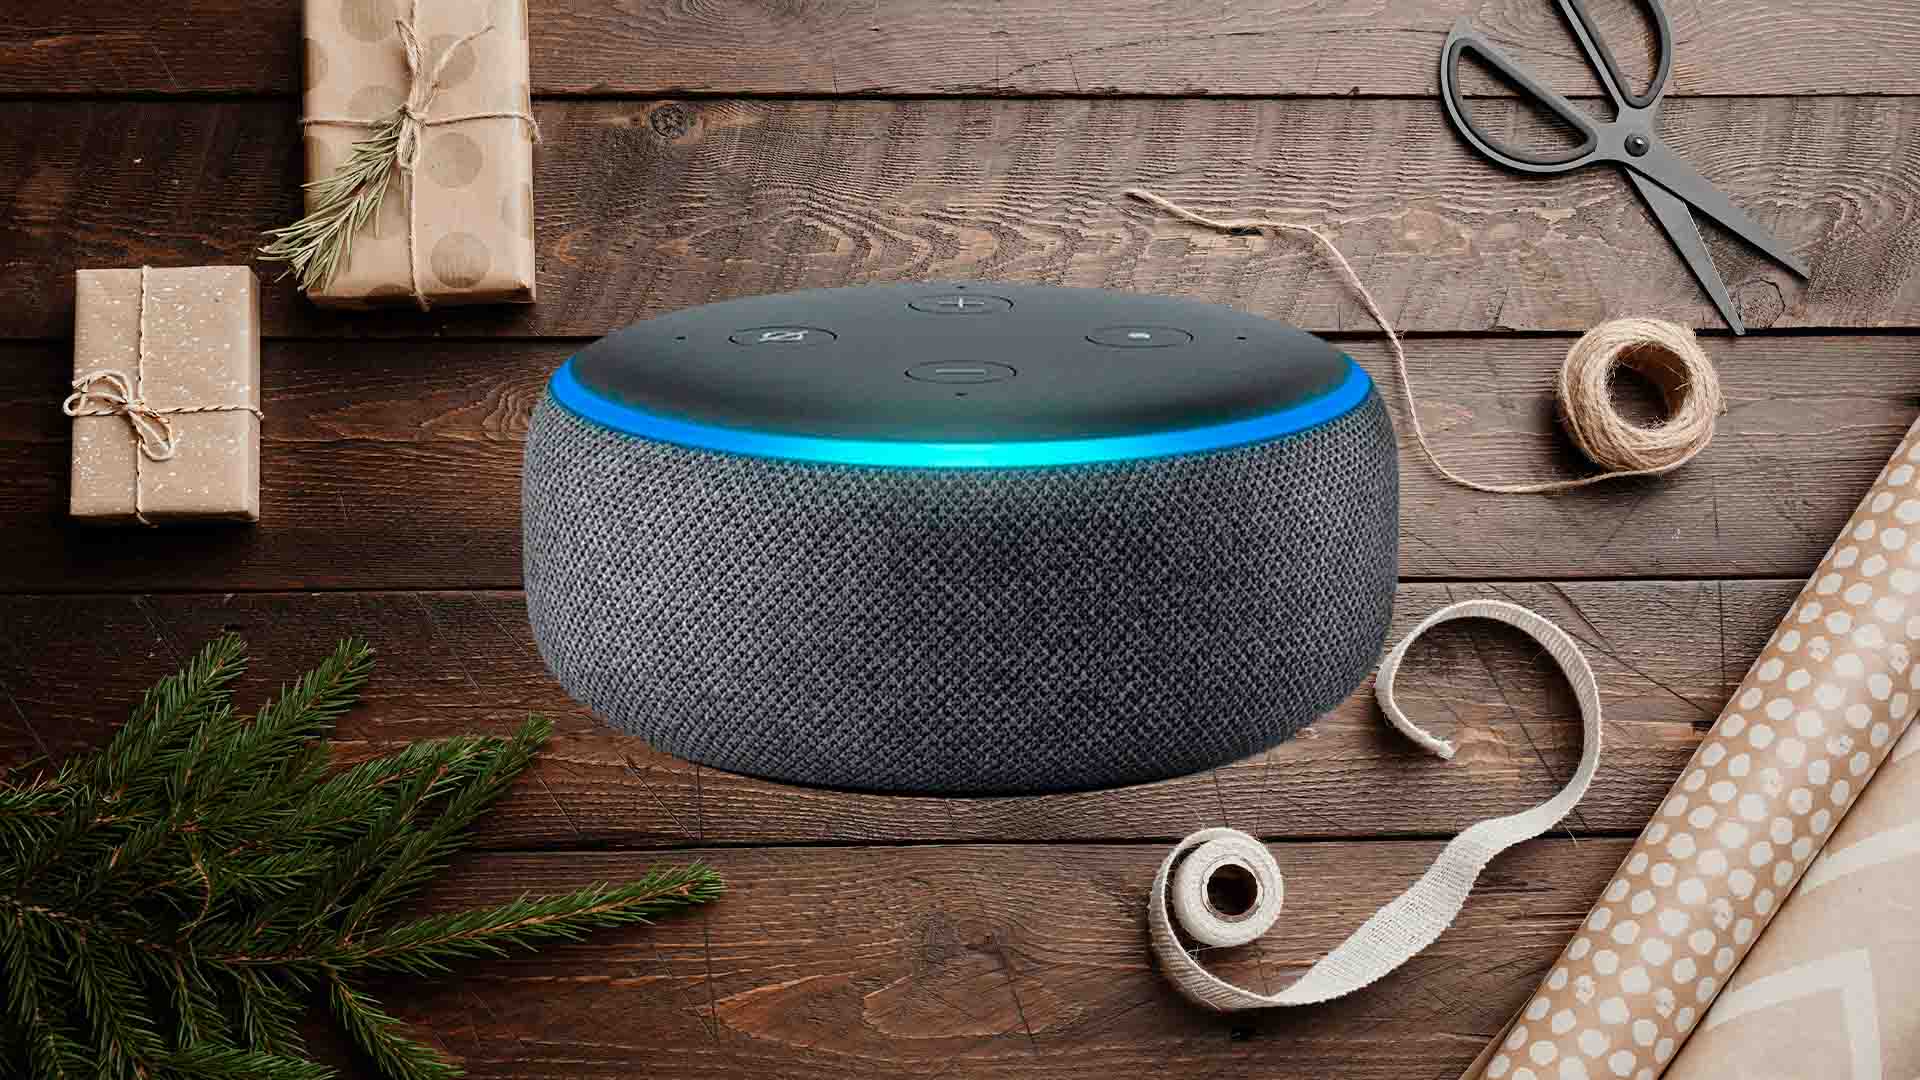 Oferta de Navidad de última hora para Echo Dot 3